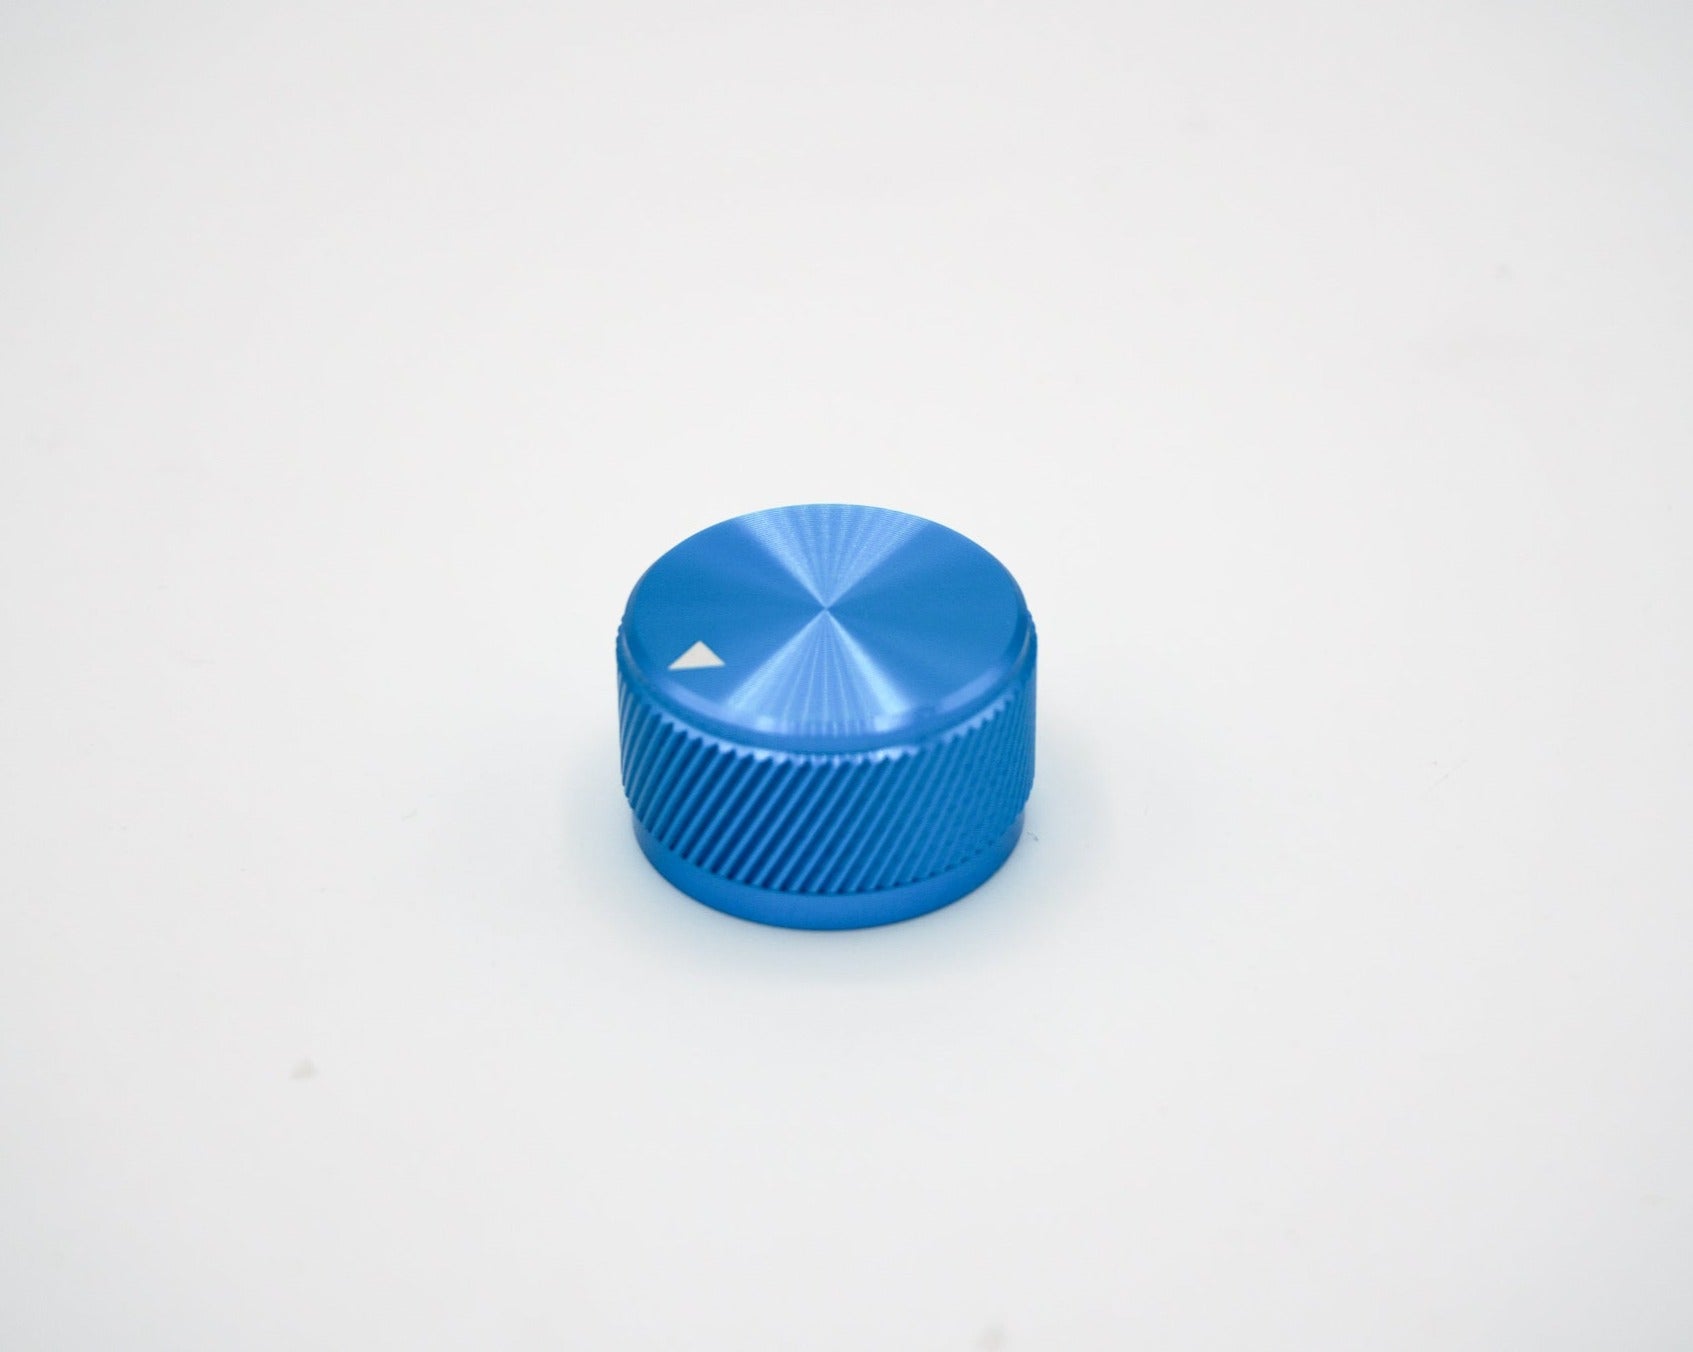 Blue Anodized Aluminum Knob with Indicator - 1.25u